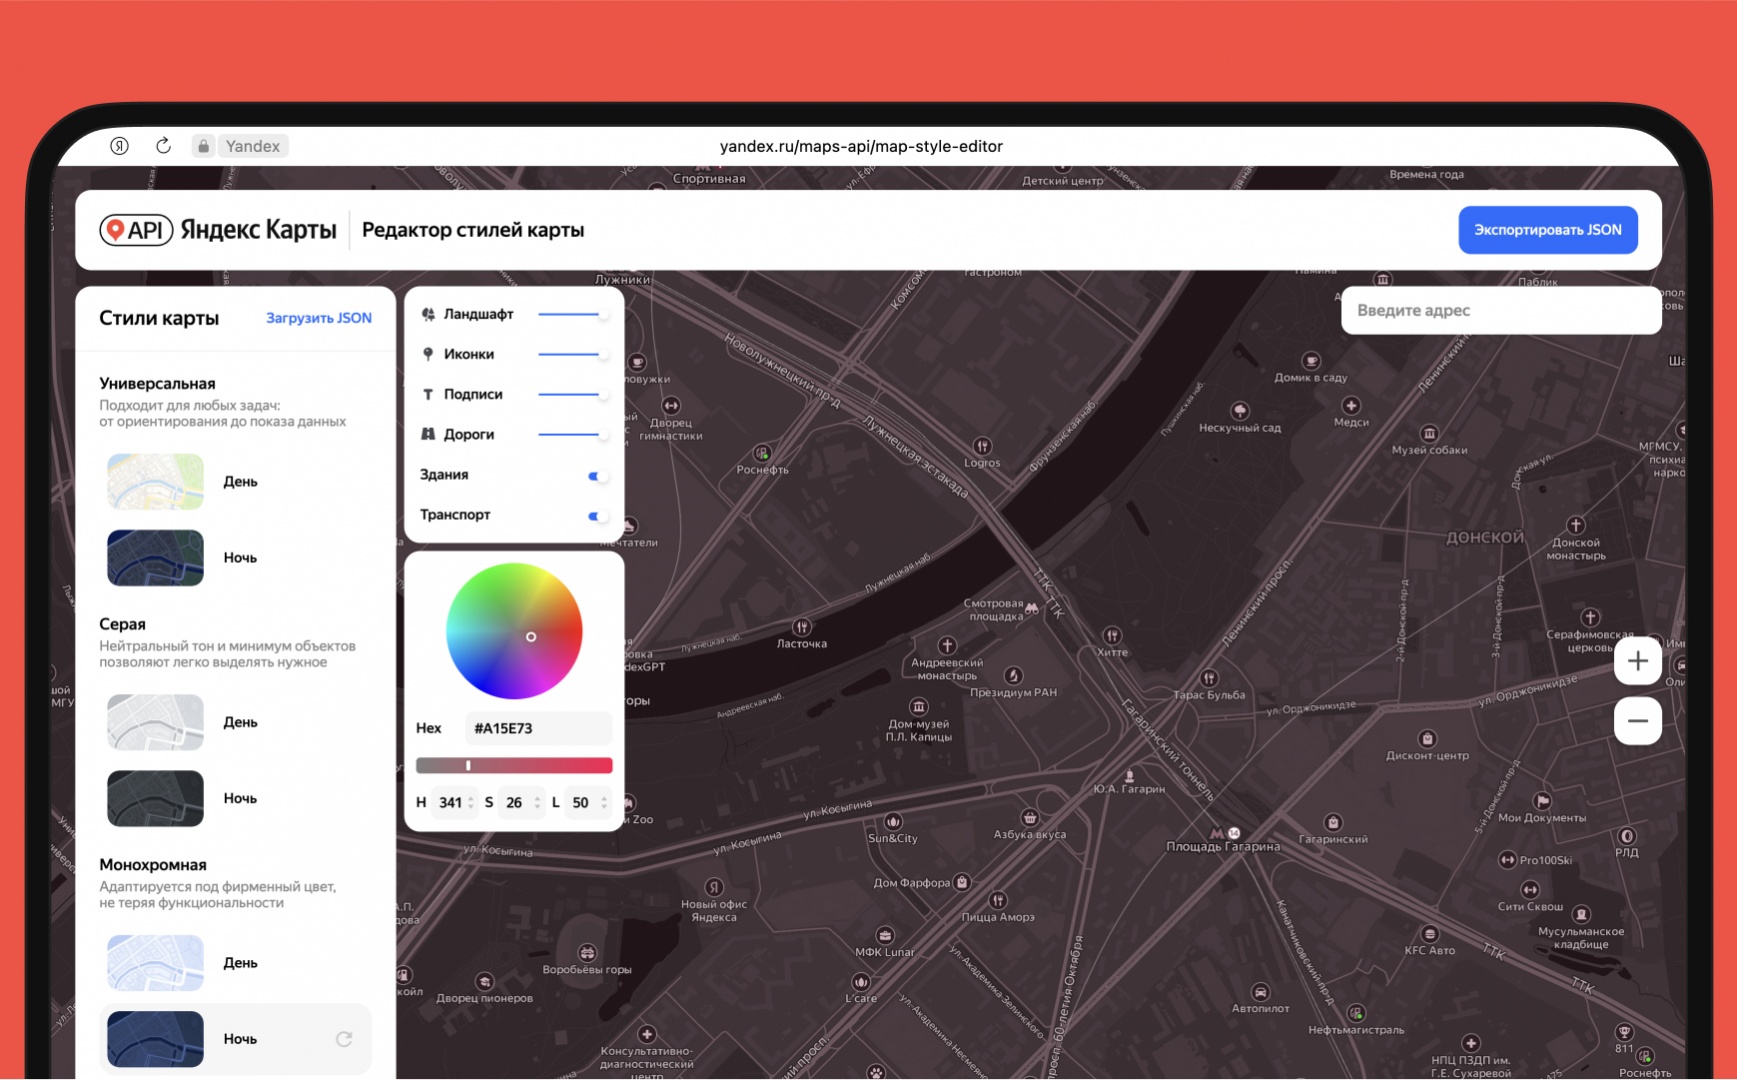 Новый инструмент от команды API Яндекс Карты для кастомизации карт